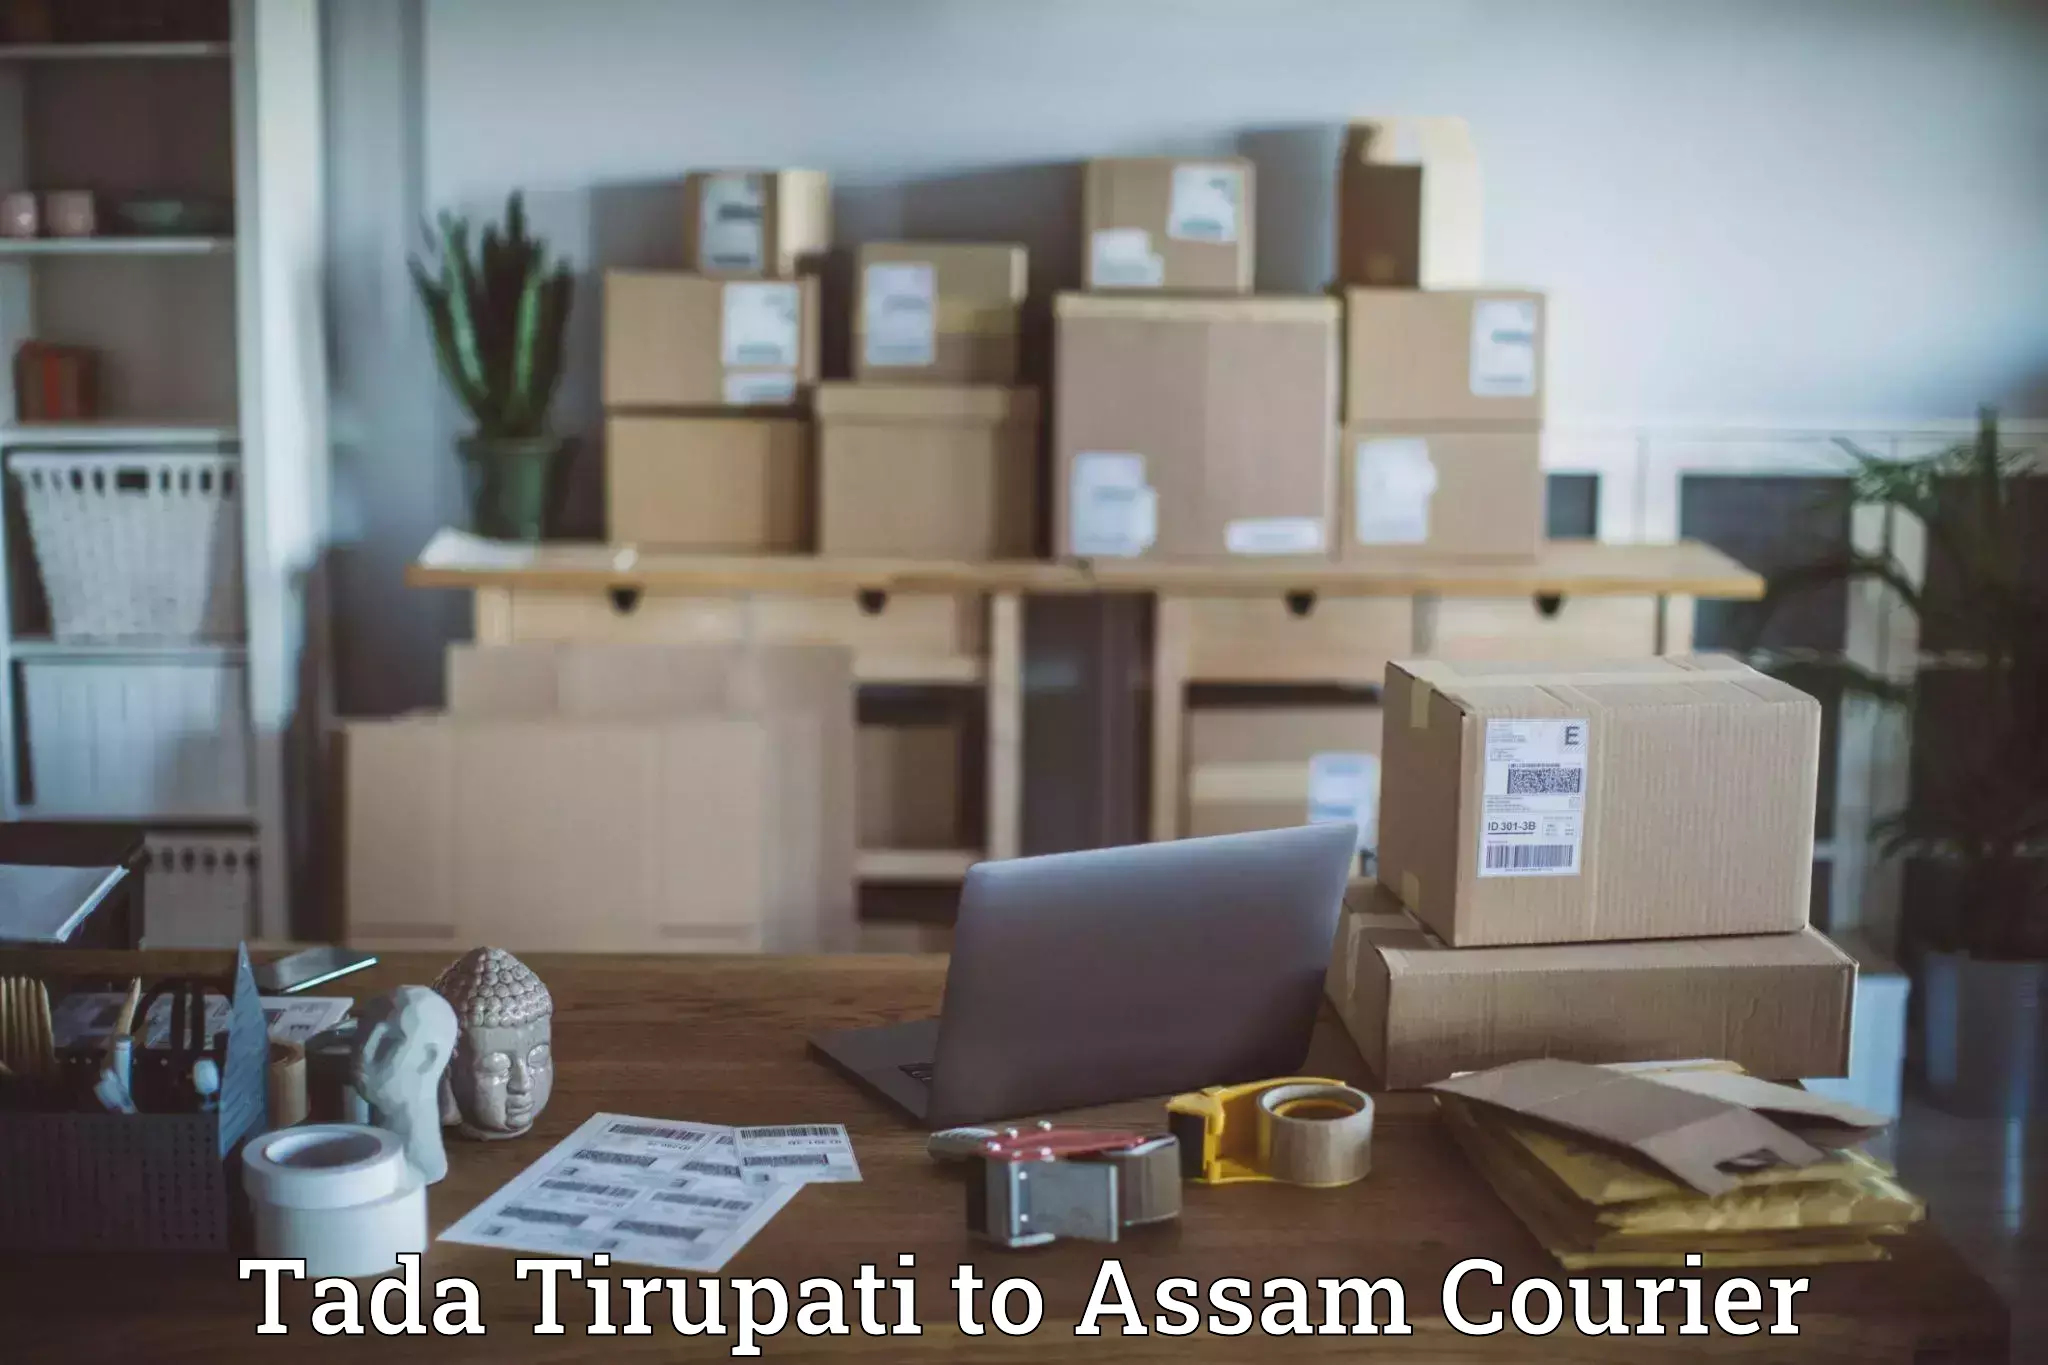 Premium delivery services Tada Tirupati to Assam